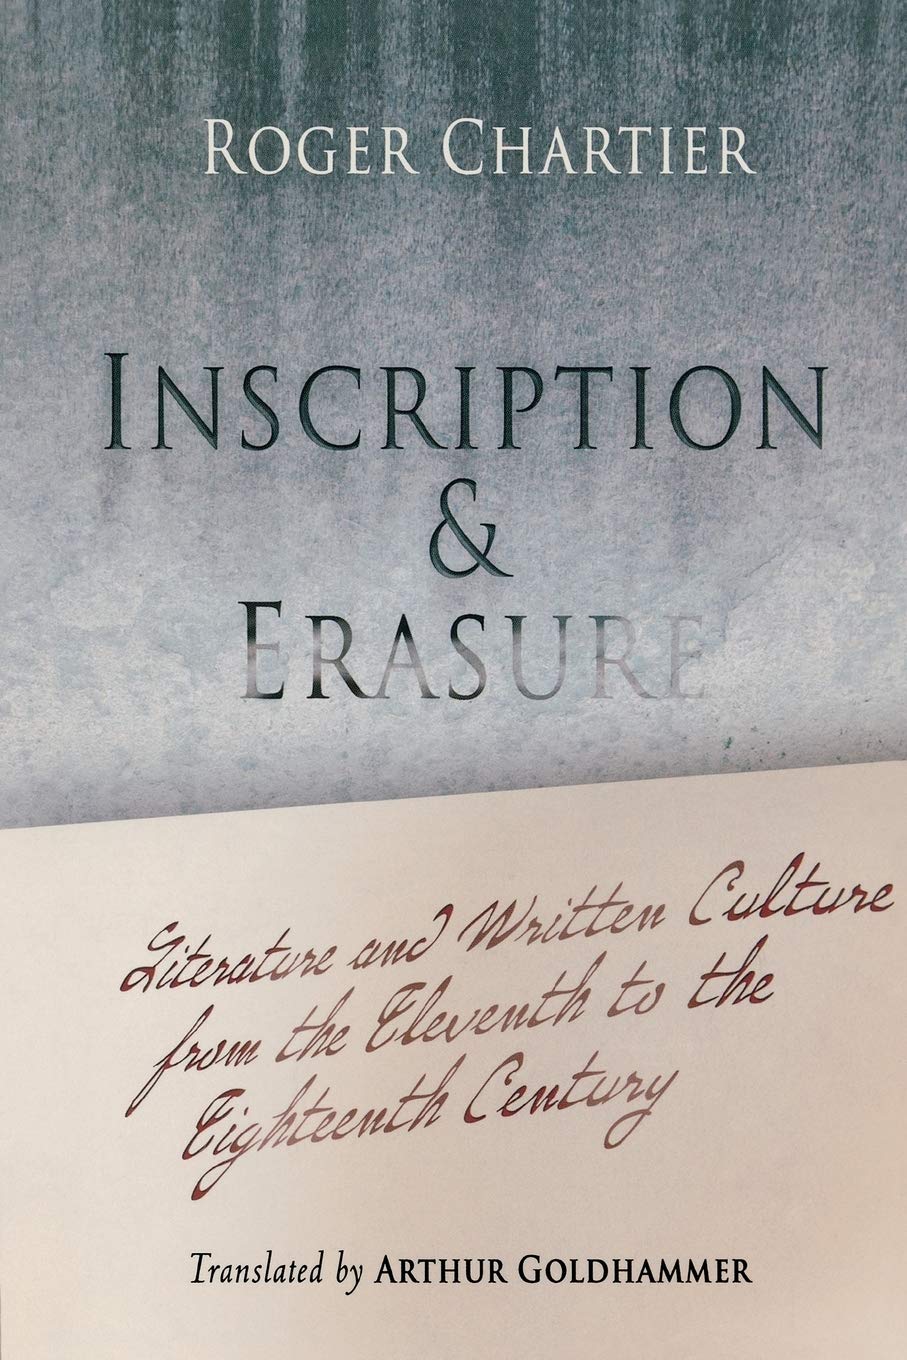 Inscription and Erasure : Literature and Written Culture from the Eleventh to the Eighteenth Century ร้านหนังสือและสิ่งของ เป็นร้านหนังสือภาษาอังกฤษหายาก และร้านกาแฟ หรือ บุ๊คคาเฟ่ ตั้งอยู่สุขุมวิท กรุงเทพ